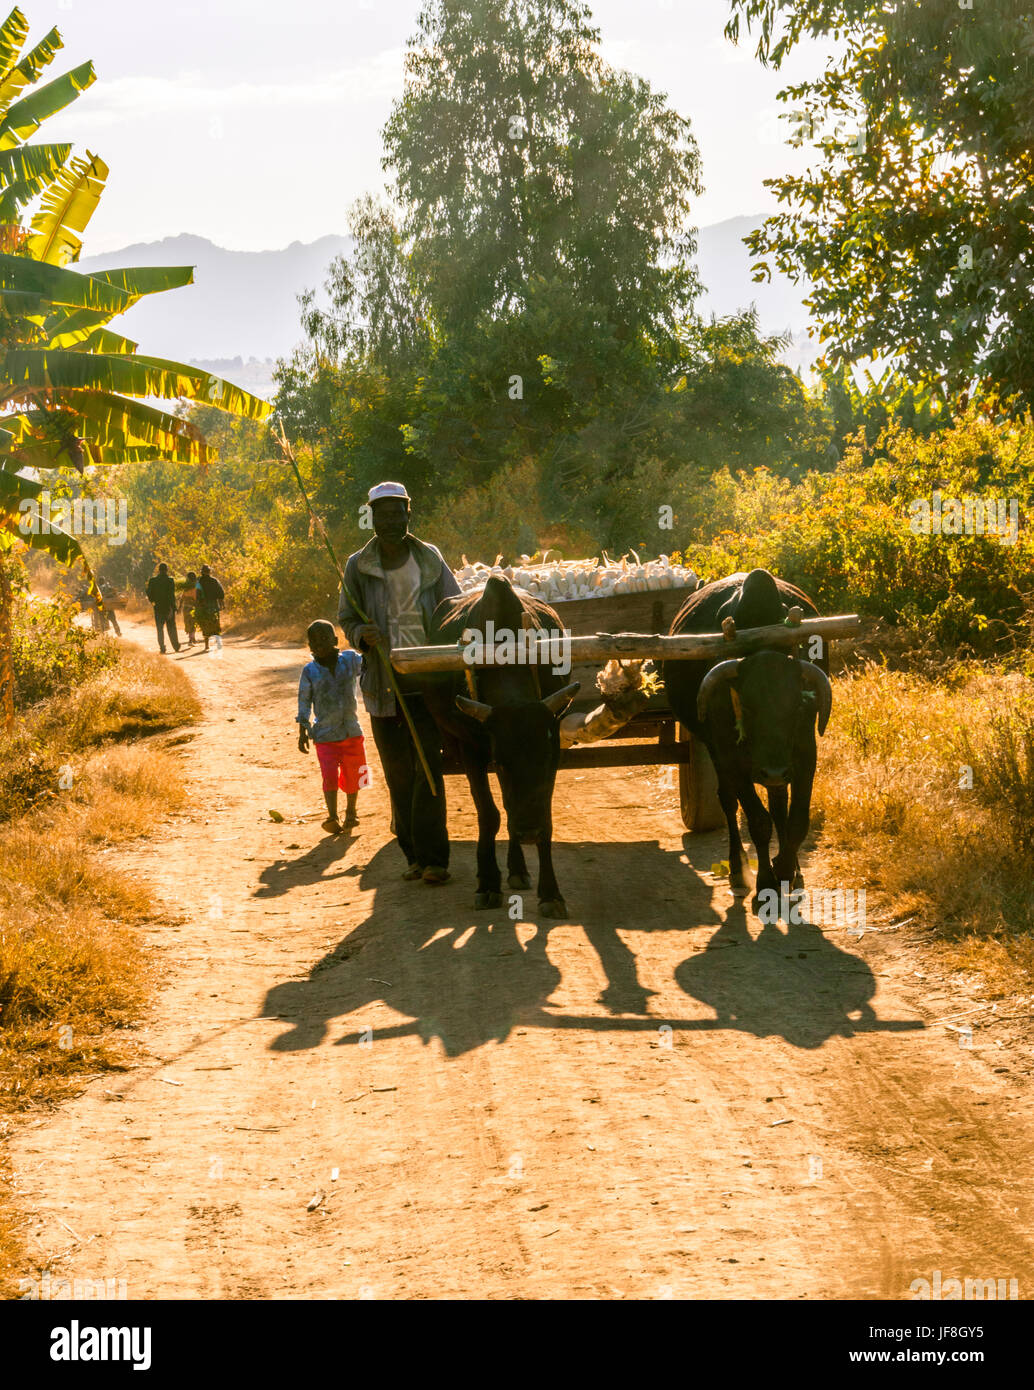 Malawianos hombre camina carretas llevando las mazorcas de maíz de su campo en camino de tierra corriendo a través de aldea rural mostrando tradicionalmente construyen viviendas de barro Foto de stock